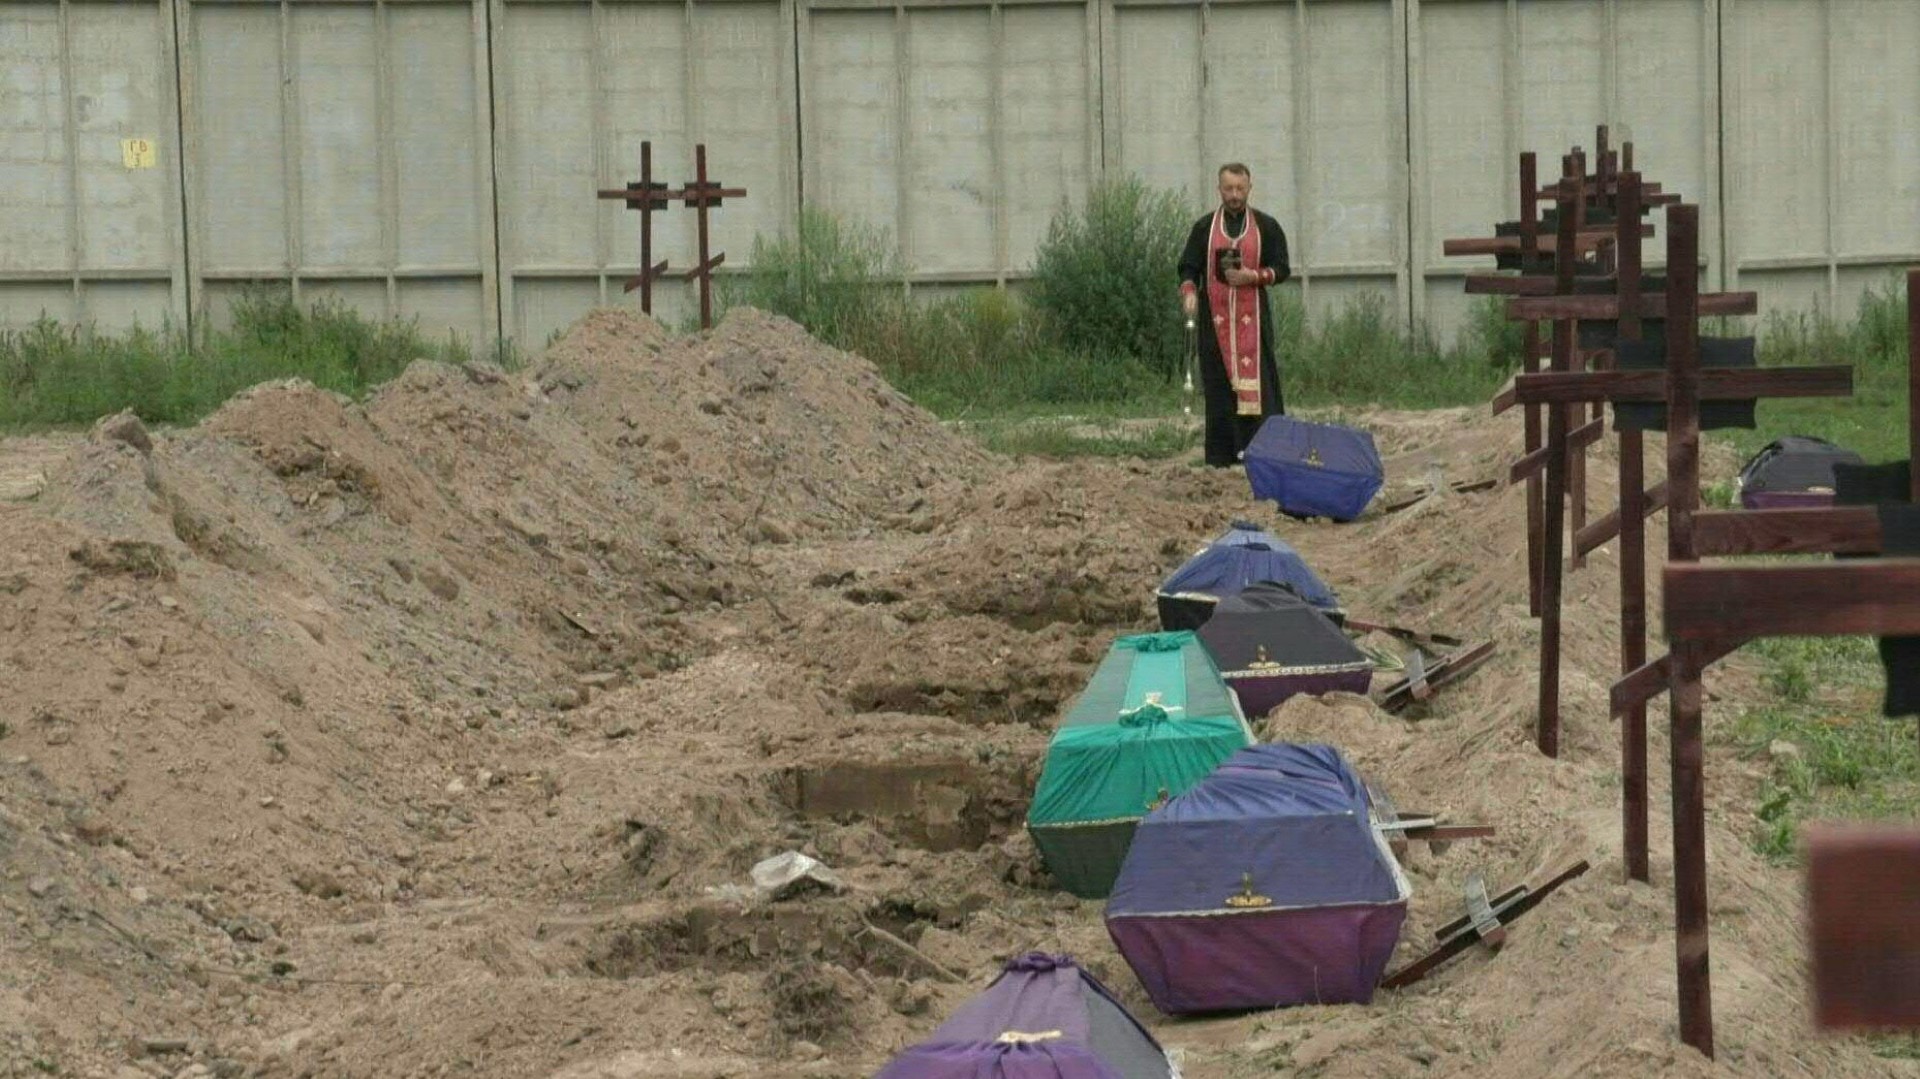 Recubiertos de un tejido color púrpura, once féretros alineados esperan sepultura, cada uno ante una tumba recién cavada en el cementerio de Bucha cerca de Kiev